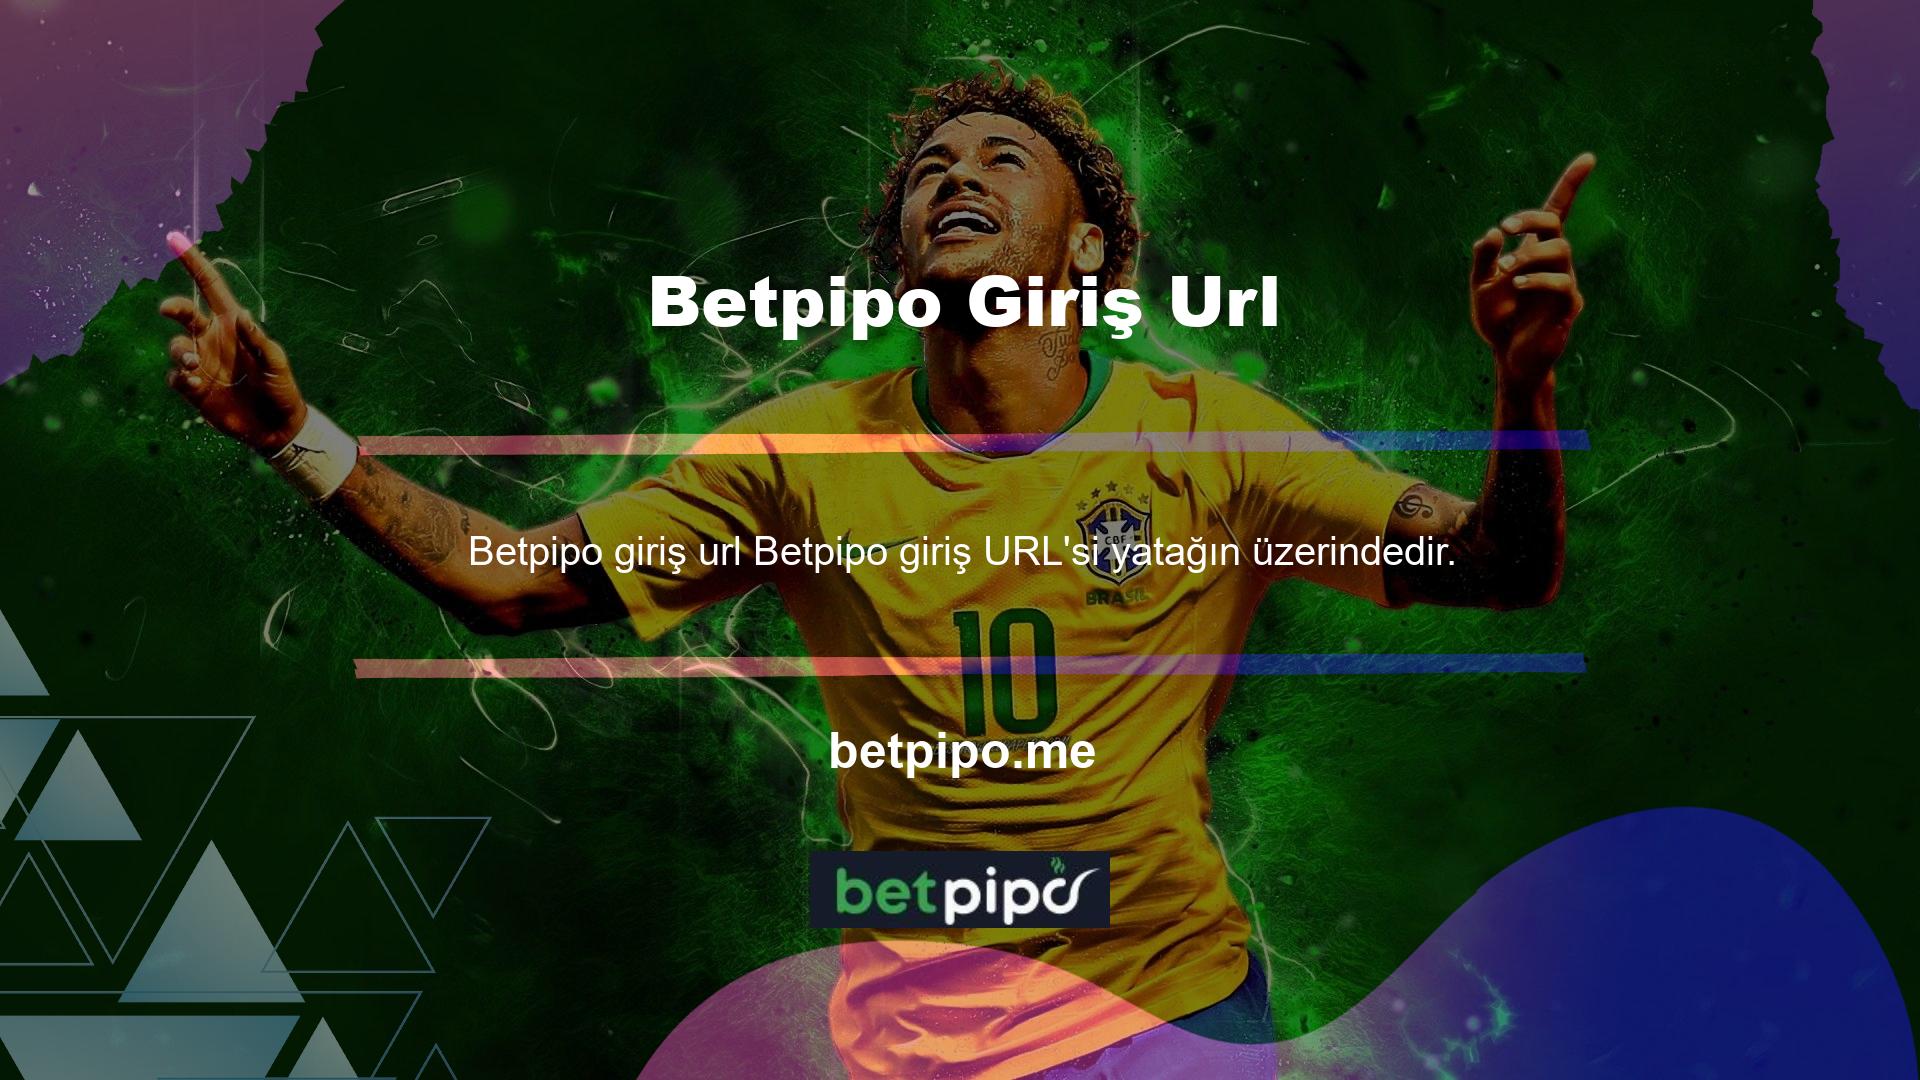 Betpipo BTK'yı engellemek için yaptığı en büyük hamle domain URL'sini değiştirmek oldu